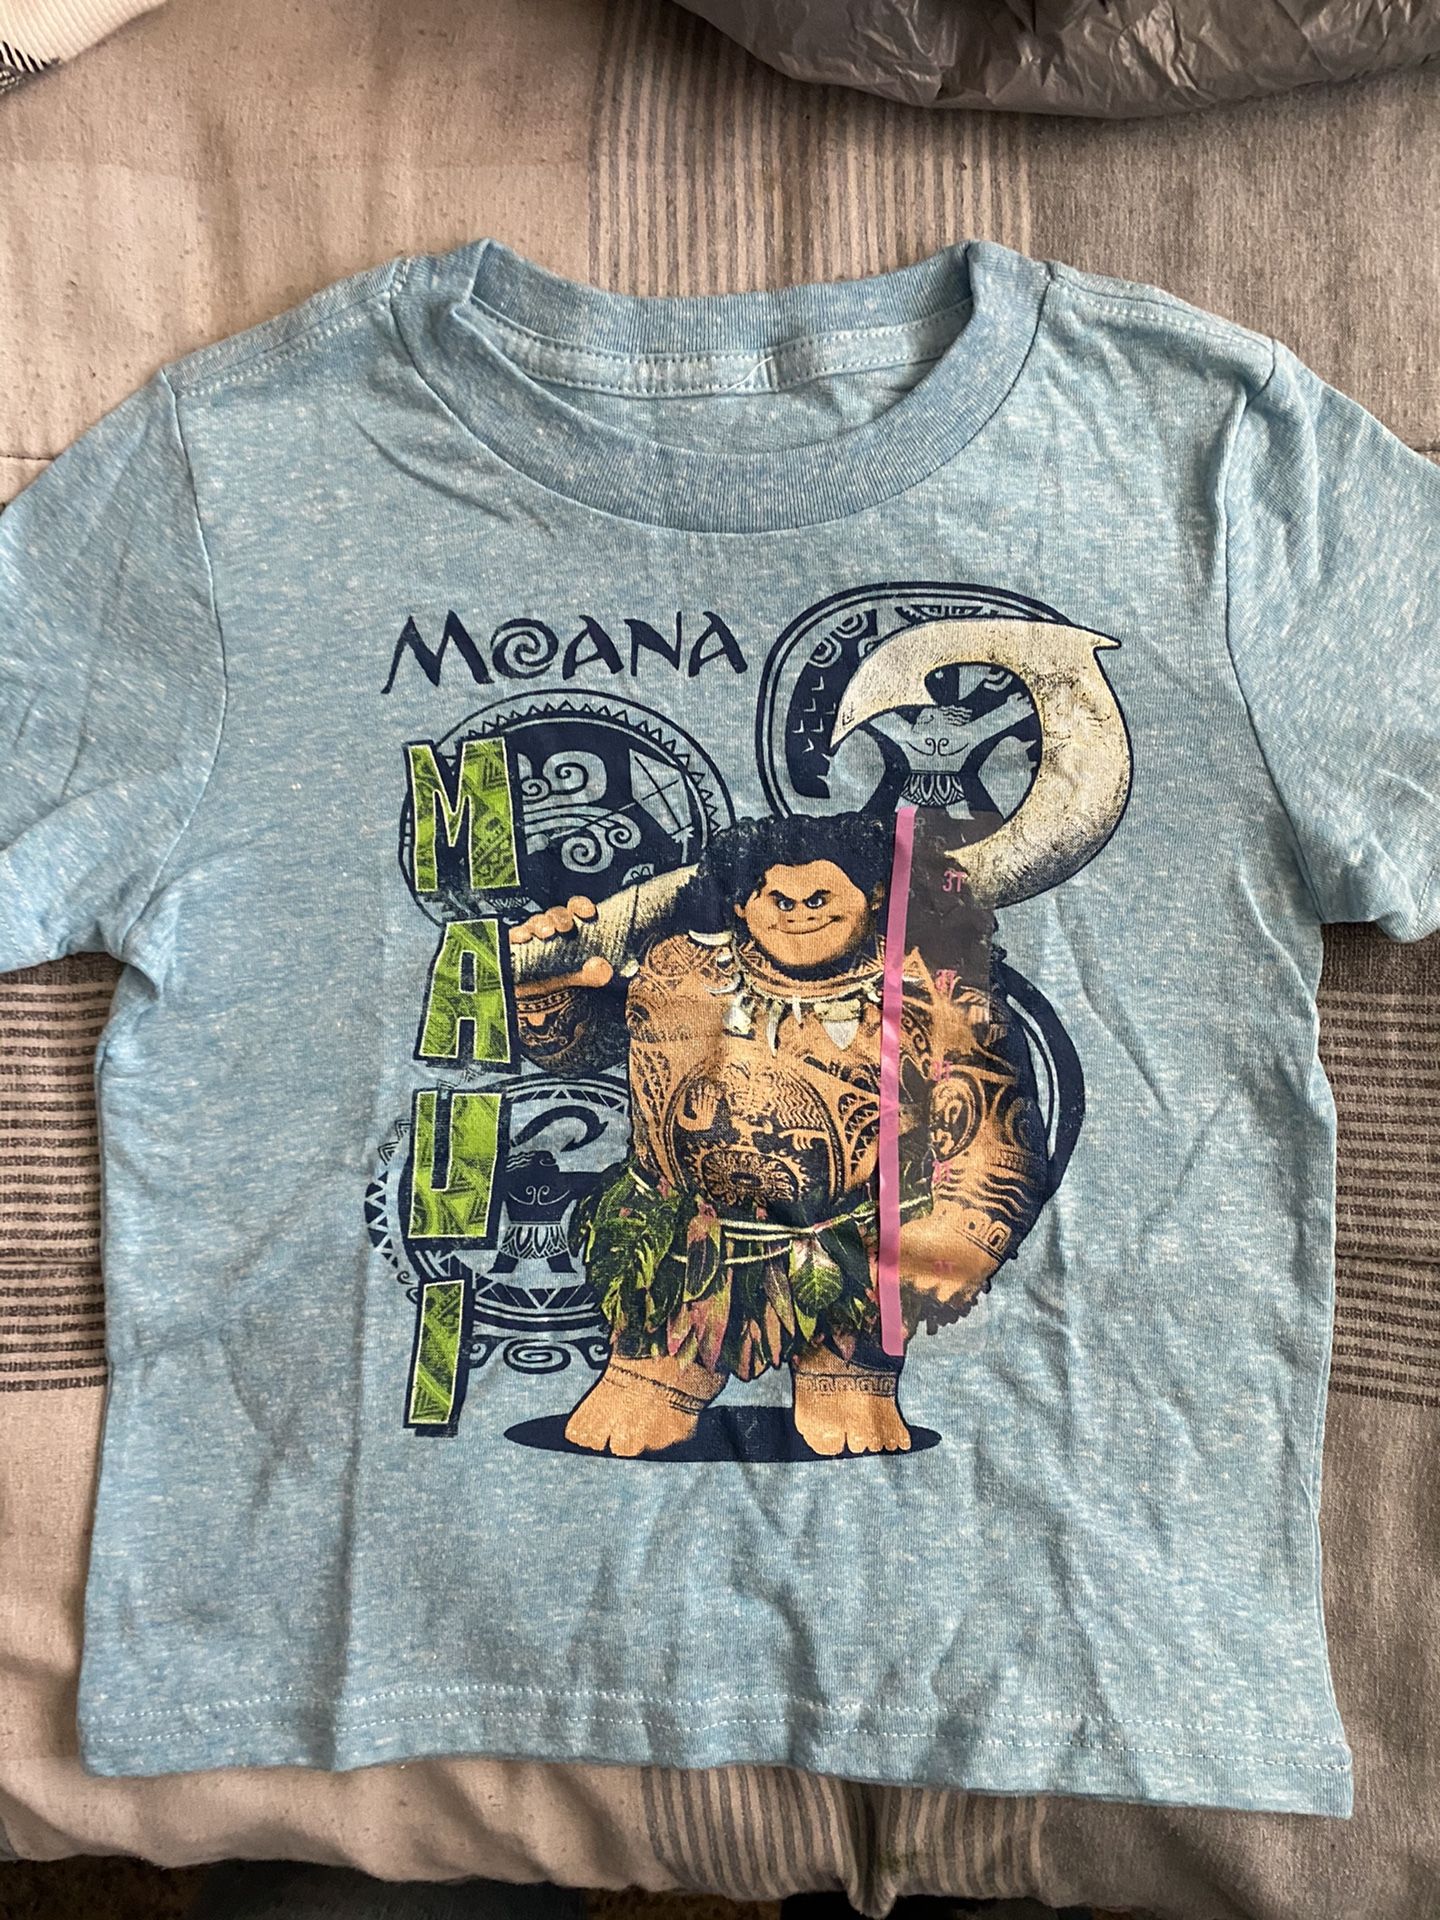 Moana toddler shirt